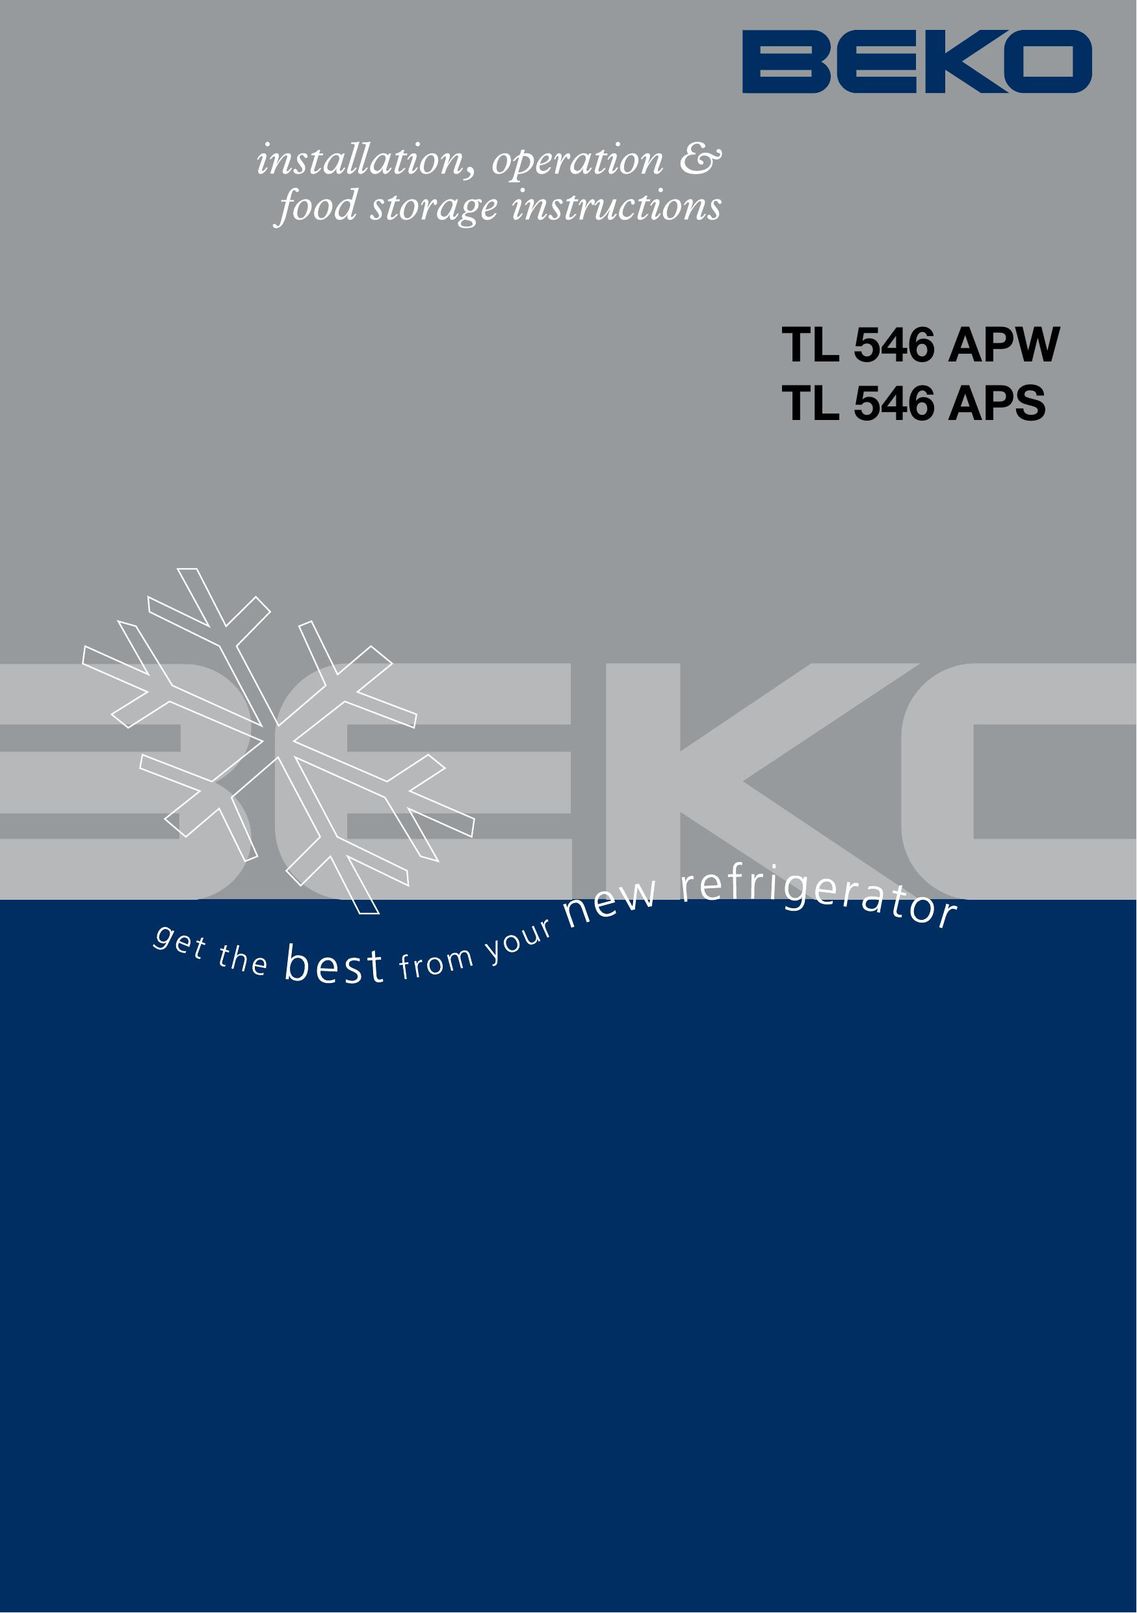 Beko TL 546 APW Ice Maker User Manual